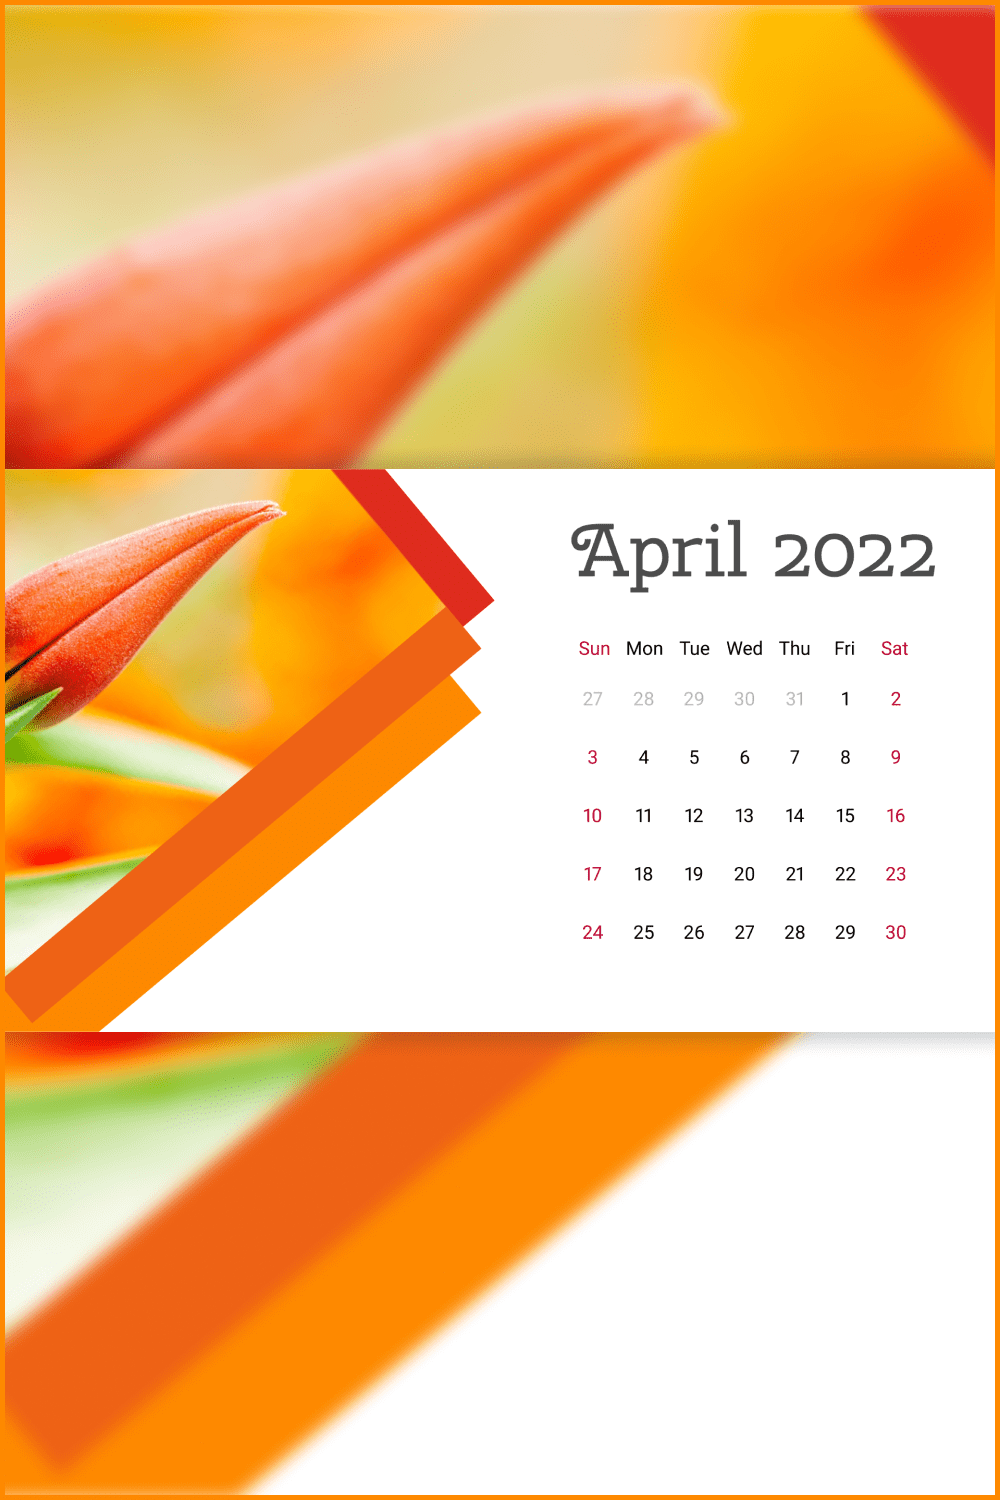 3 12 free printable april calendars 2022 1920x1080 1